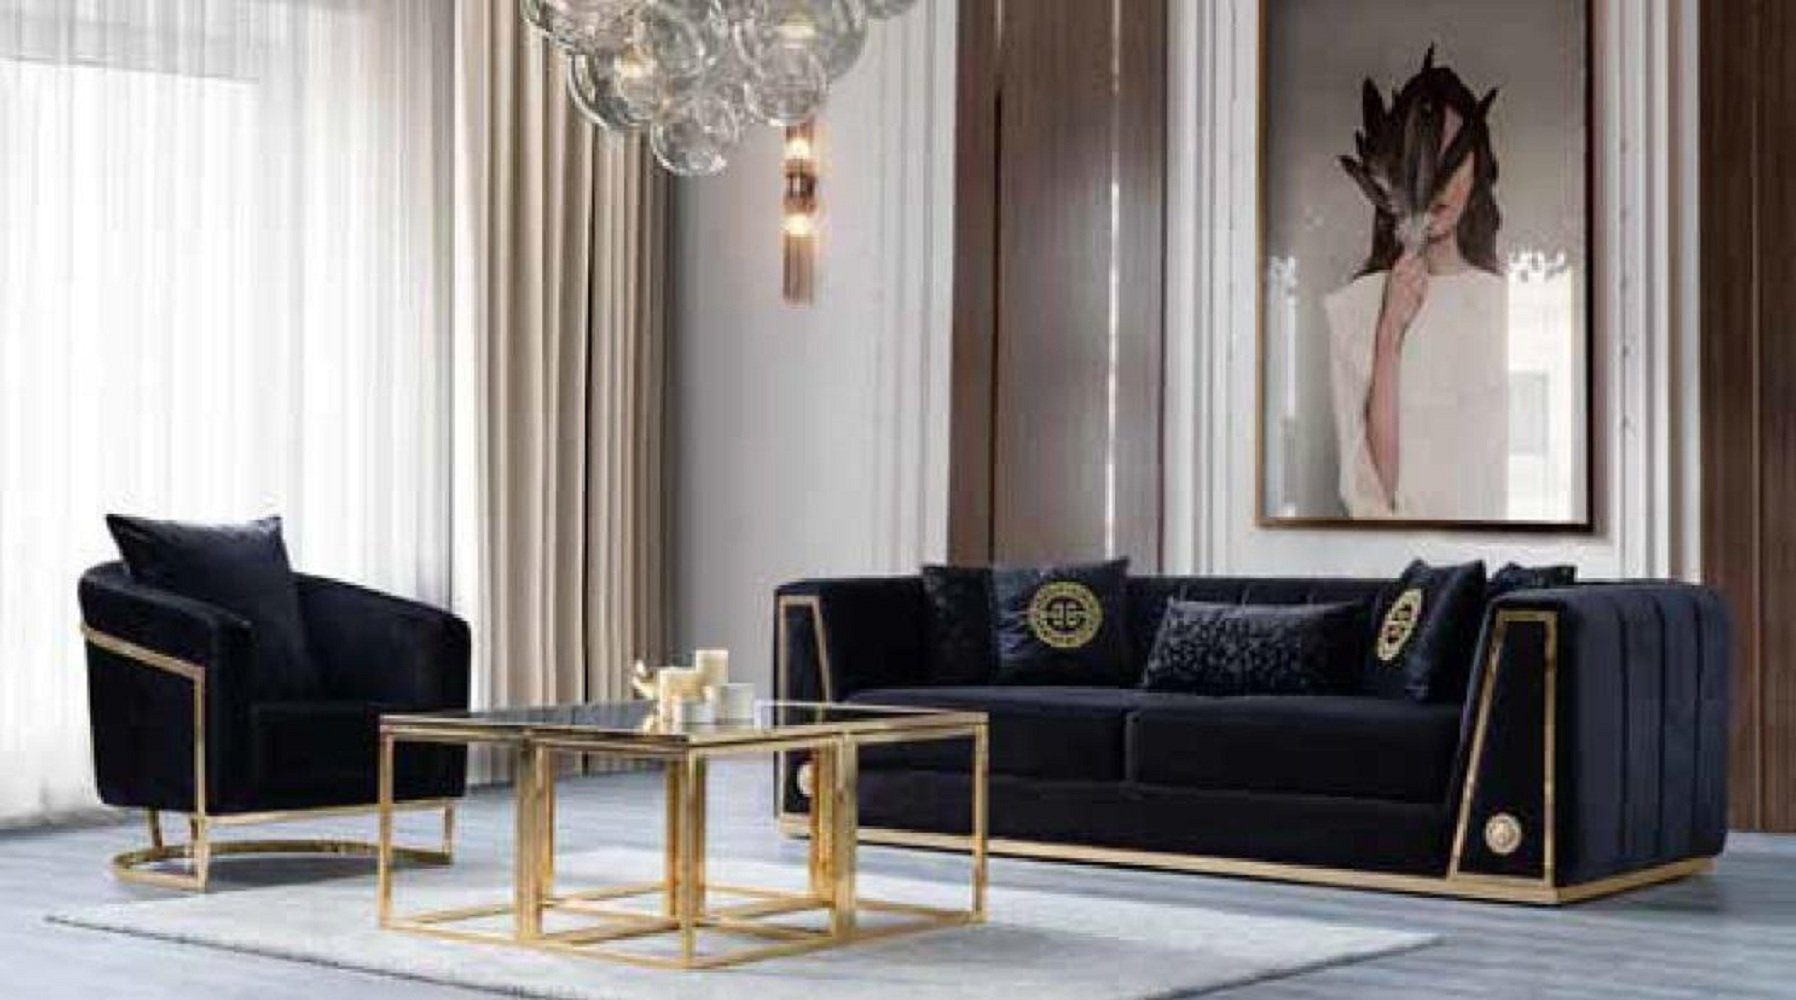 JVmoebel 3-Sitzer Schwarzer Teile, Neu, Wohnzimmereinrichtung in 1 Couch Made Europe Luxus Wohnzimmer Dreisitzer